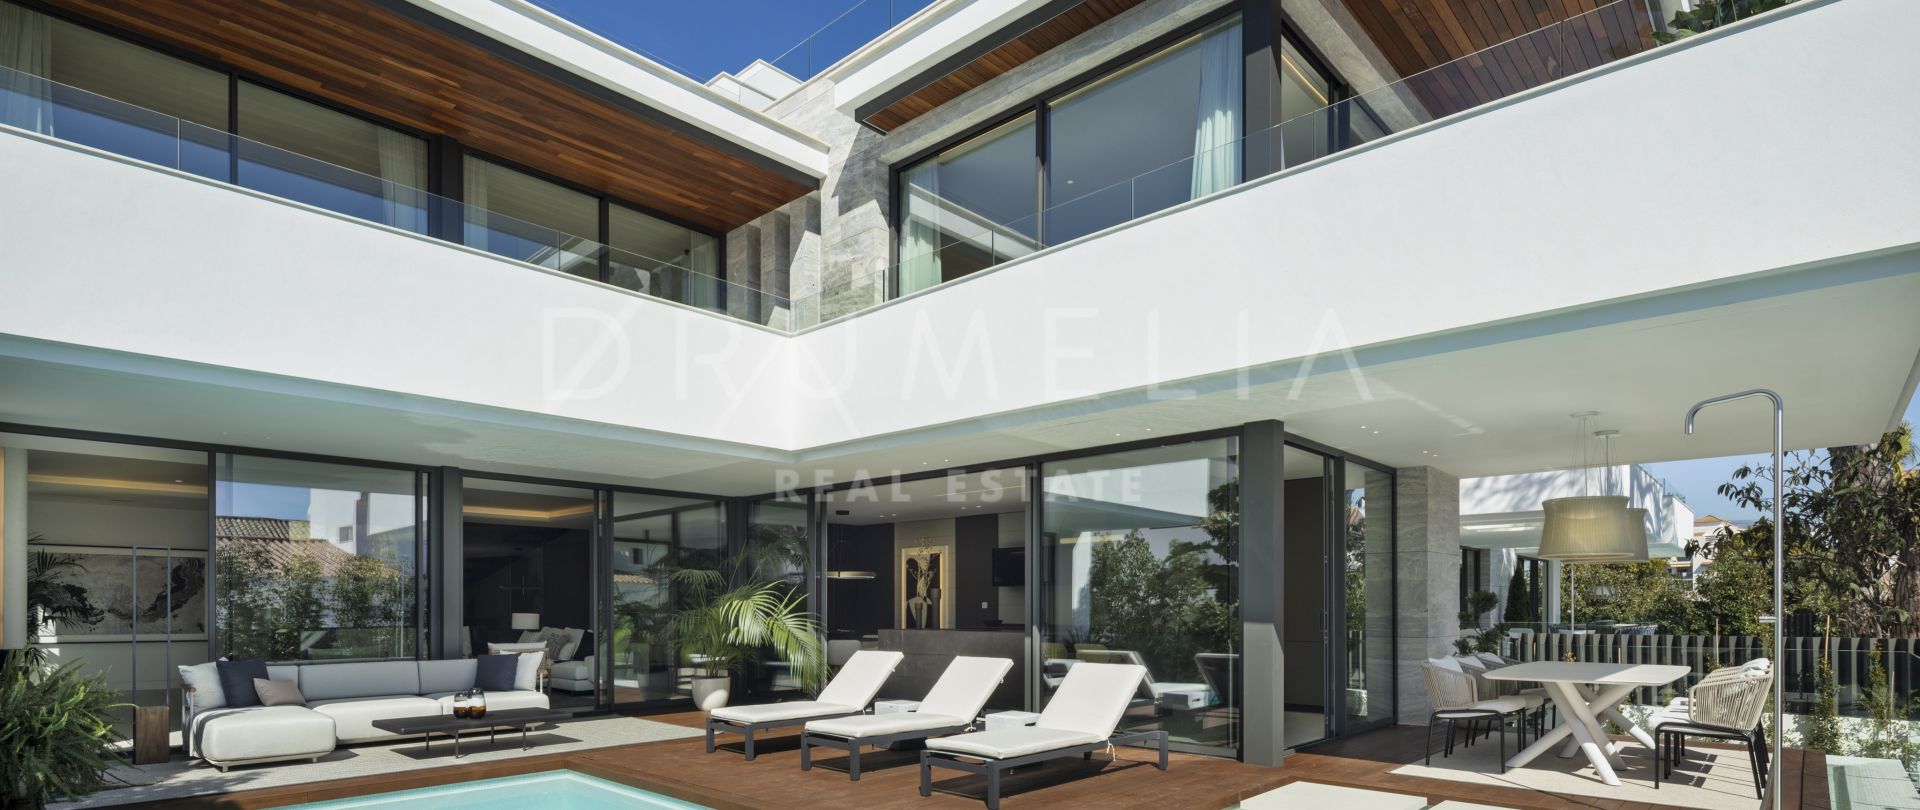 Magnífica villa de nueva construcción junto a la playa con arquitectura moderna, en San Pedro, Marbella